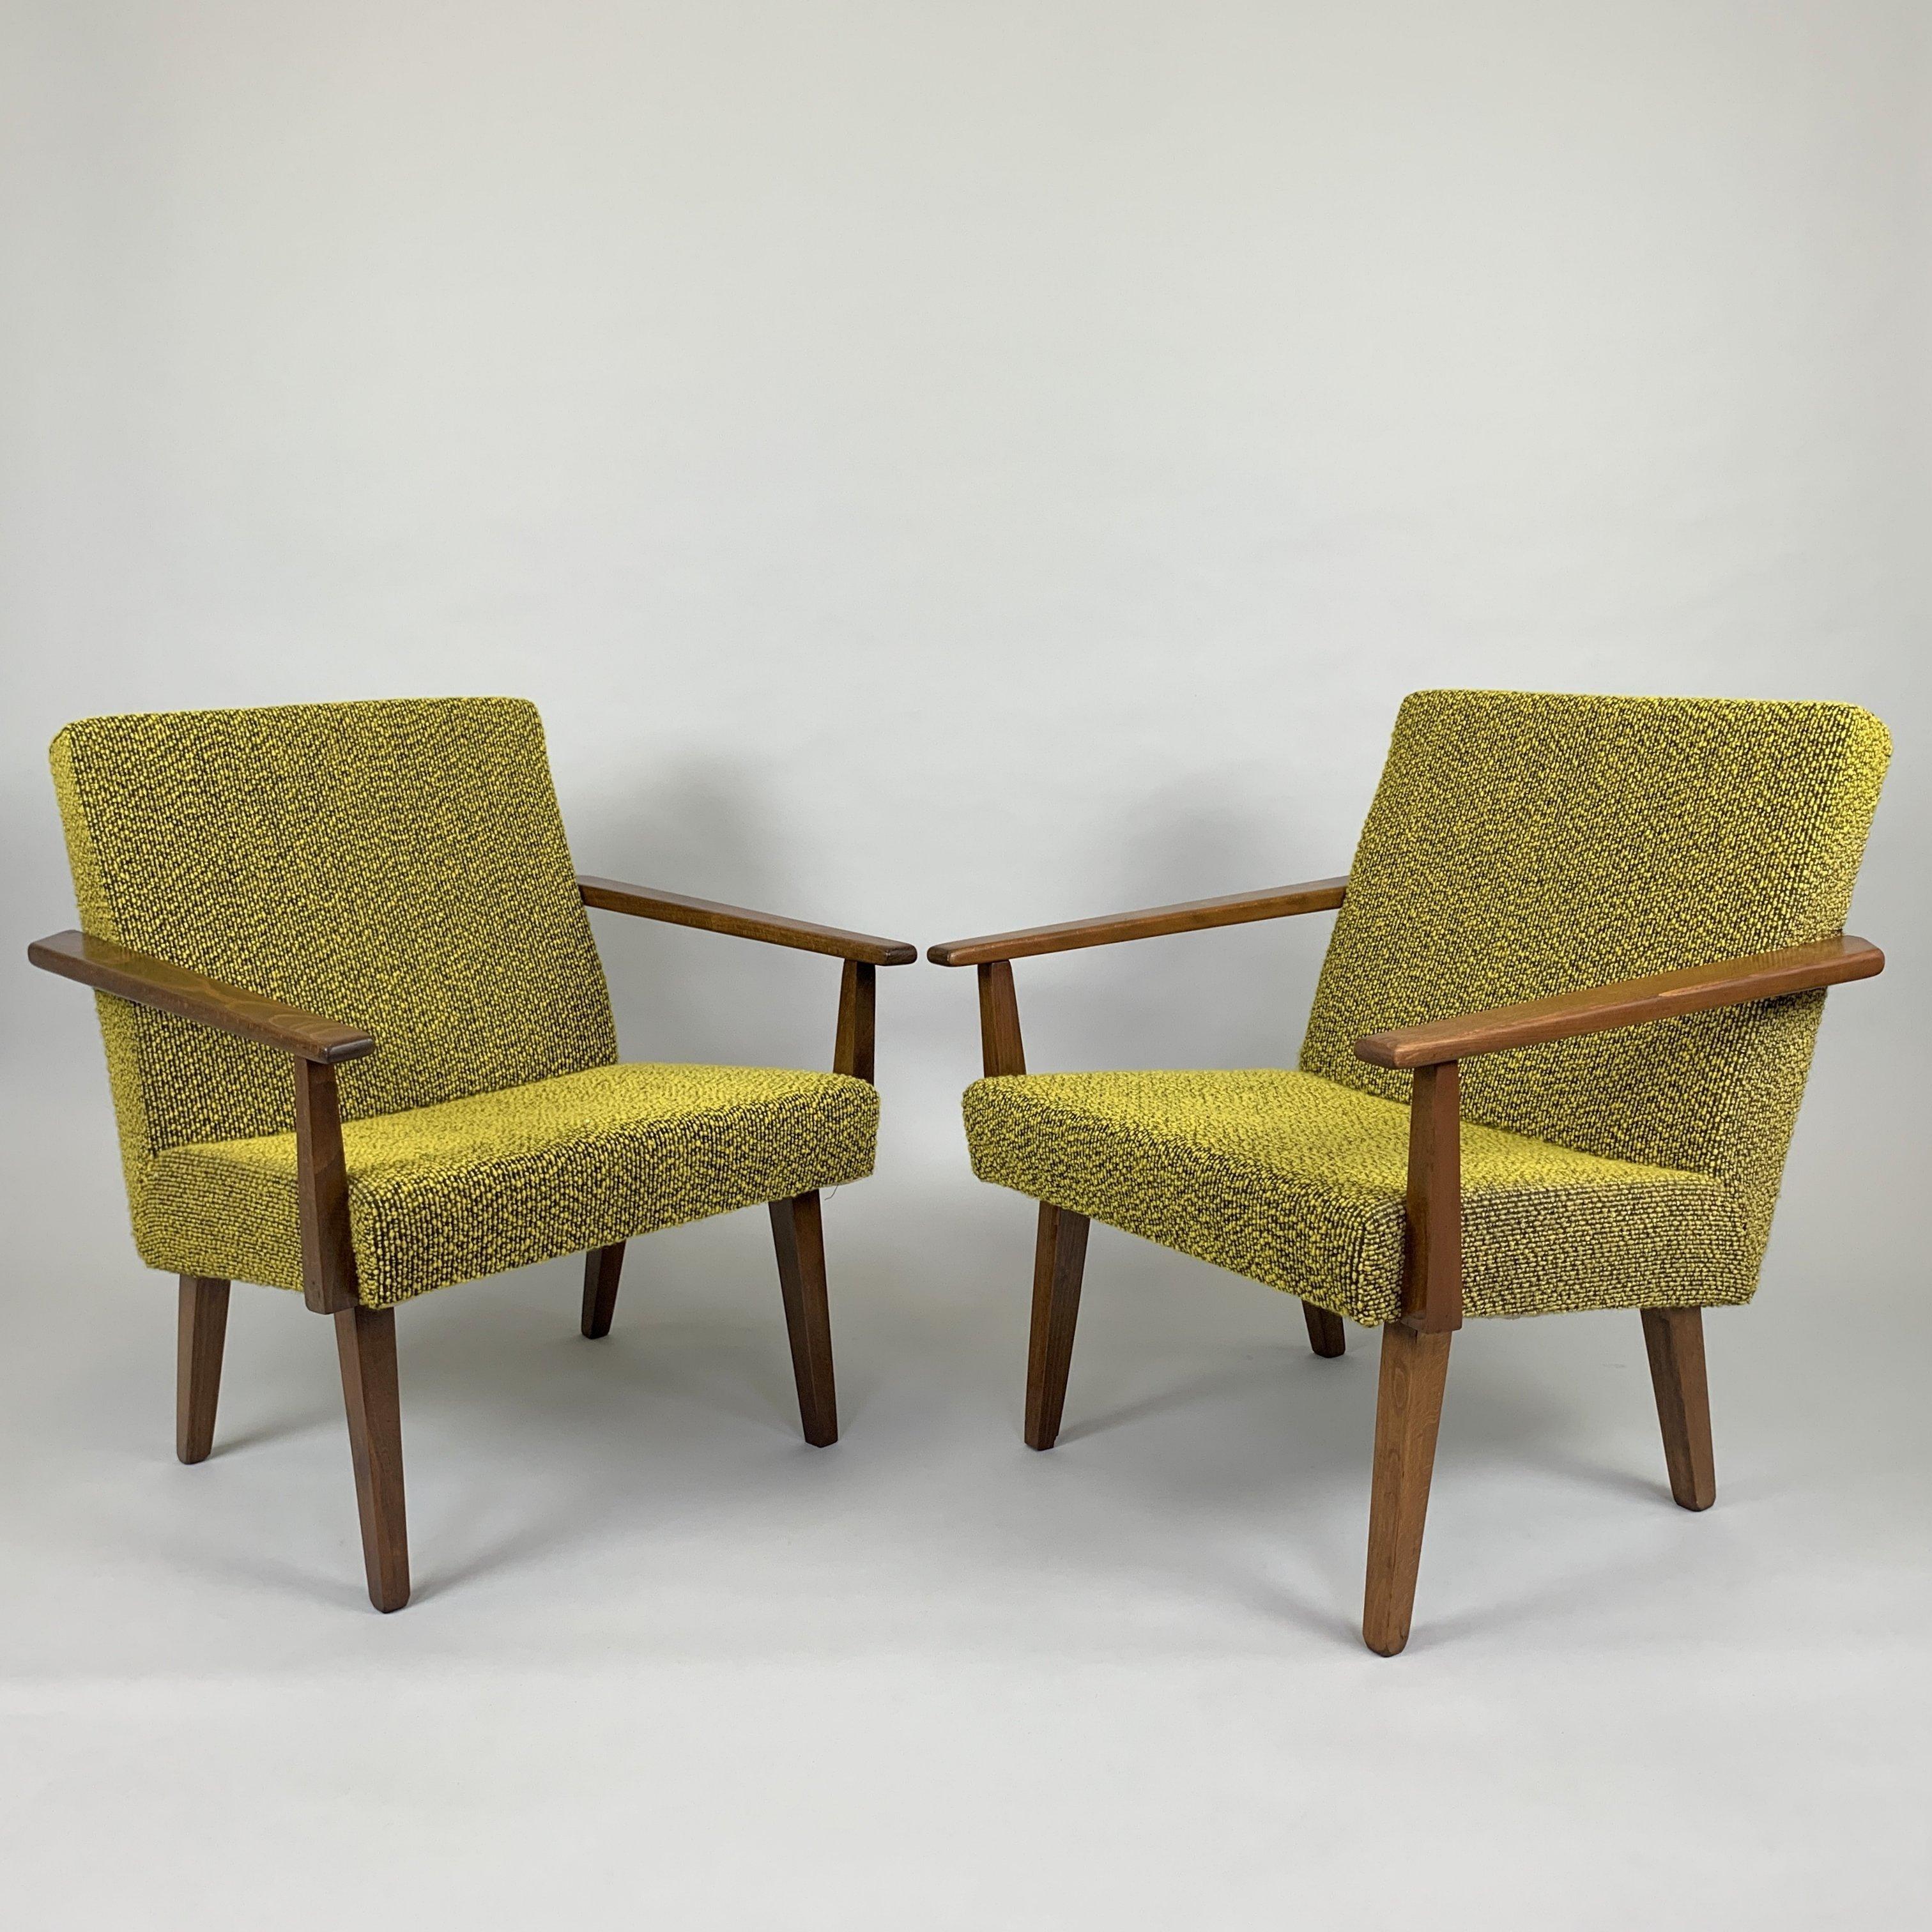 Zwei schöne Vintage-Sessel, hergestellt in der ehemaligen Tschechoslowakei in den 1960er Jahren. Die Holzteile wurden aufgearbeitet. Die Polsterung ist in originalem, gut erhaltenem Zustand.